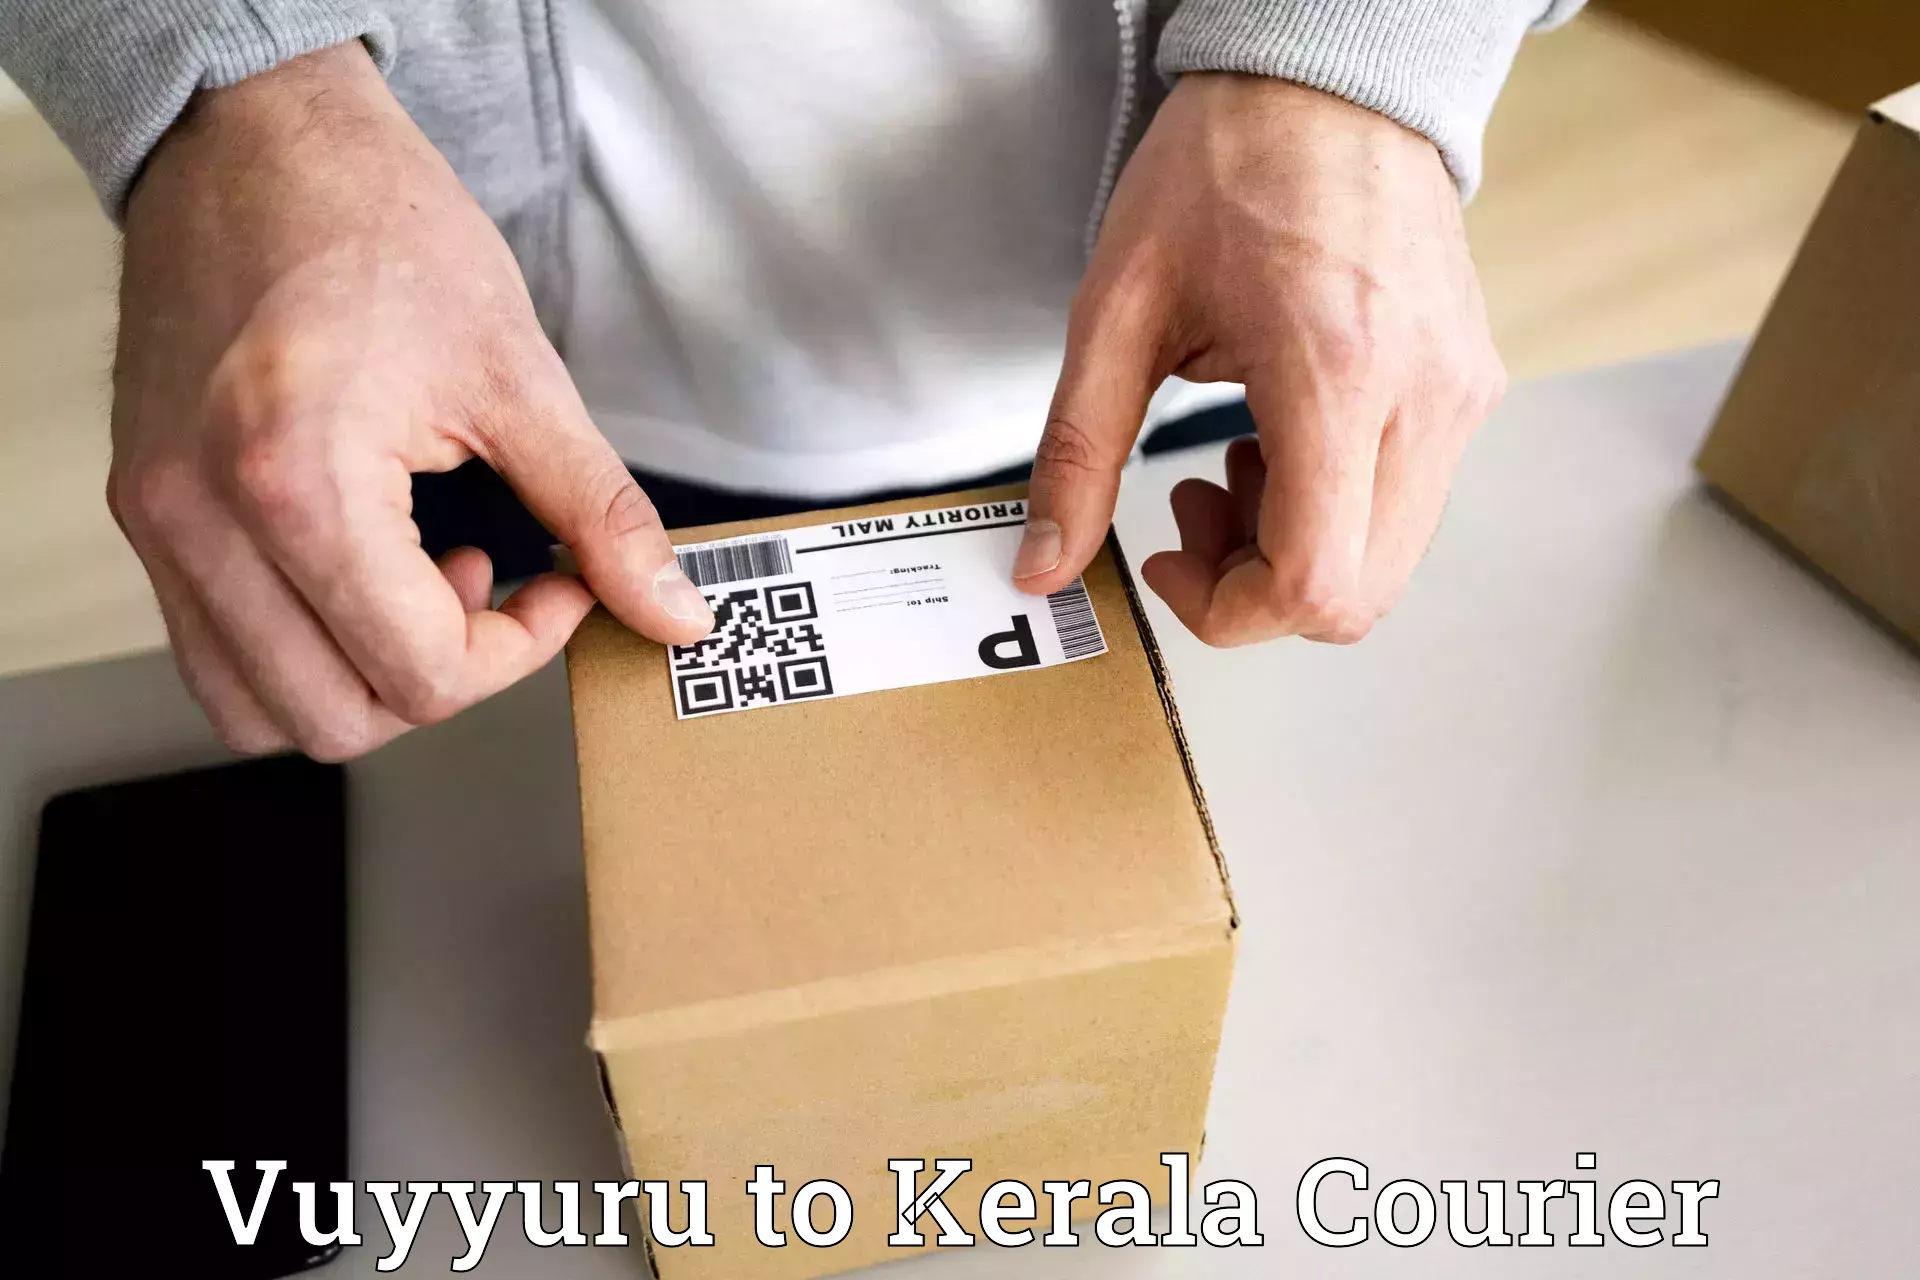 Bulk courier orders Vuyyuru to Thiruvananthapuram